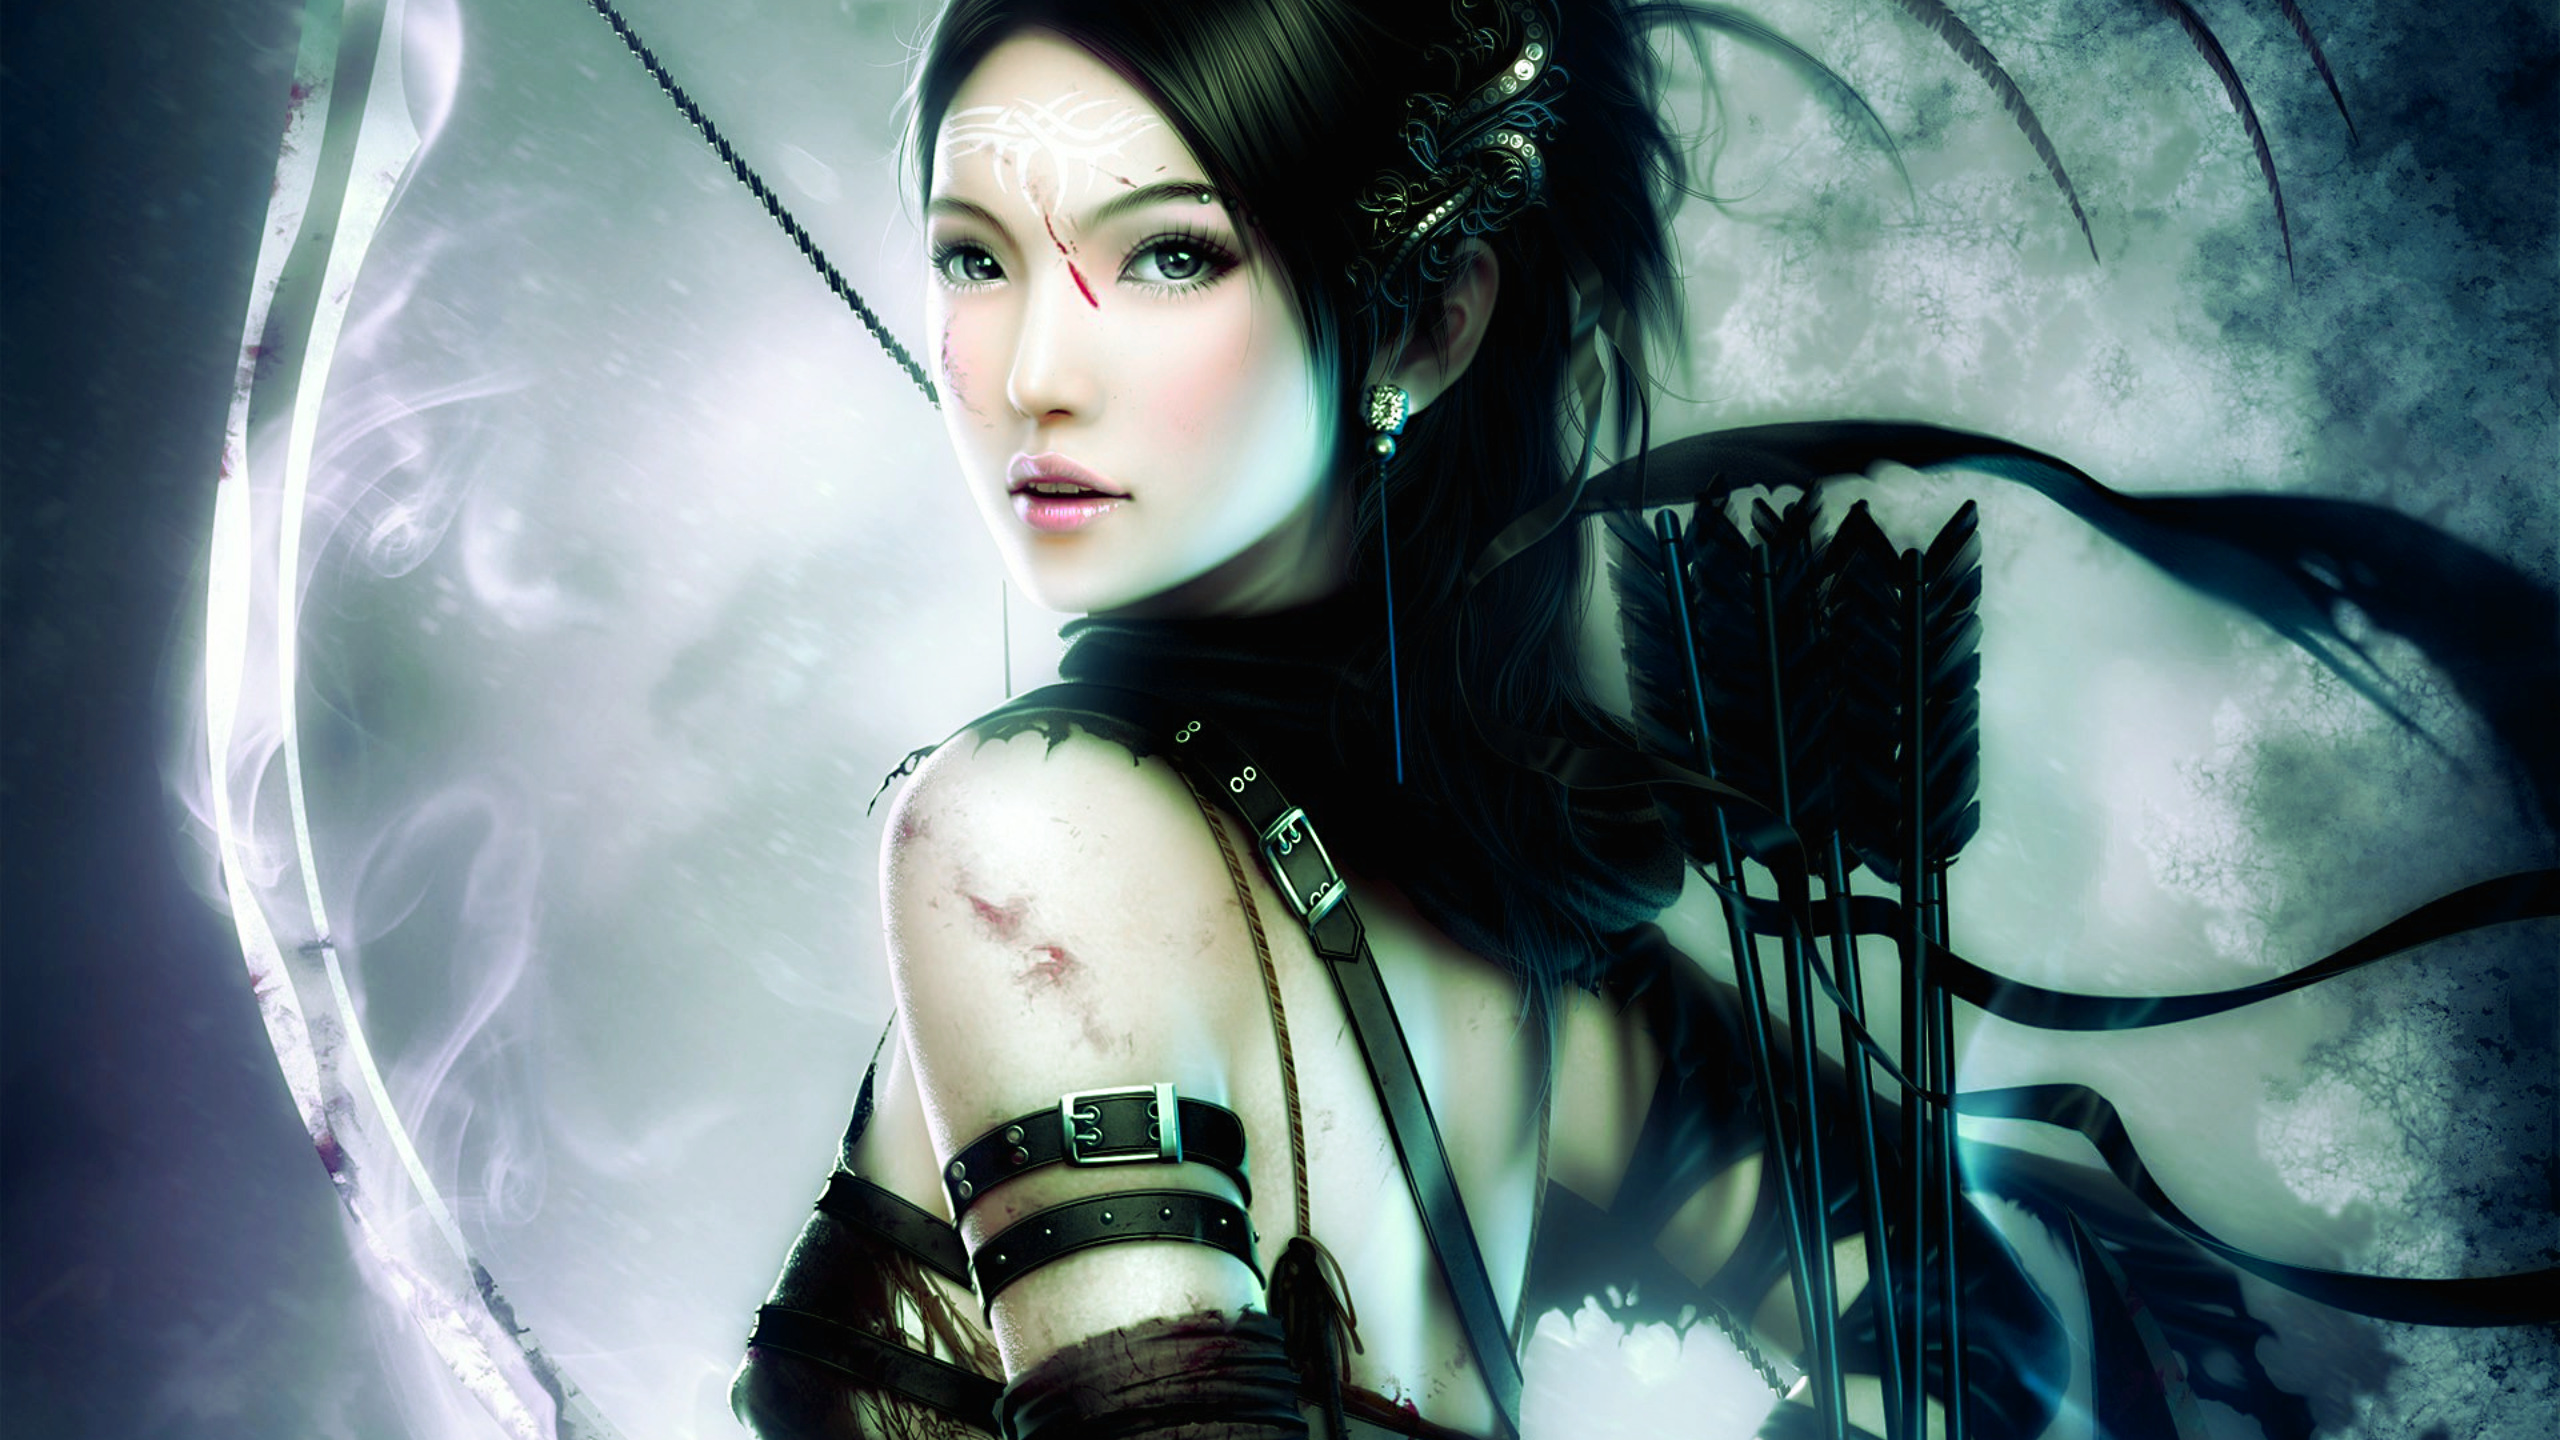 Anime 2560x1440 fantasy armor archer women artwork anime girls anime bow and arrow bow